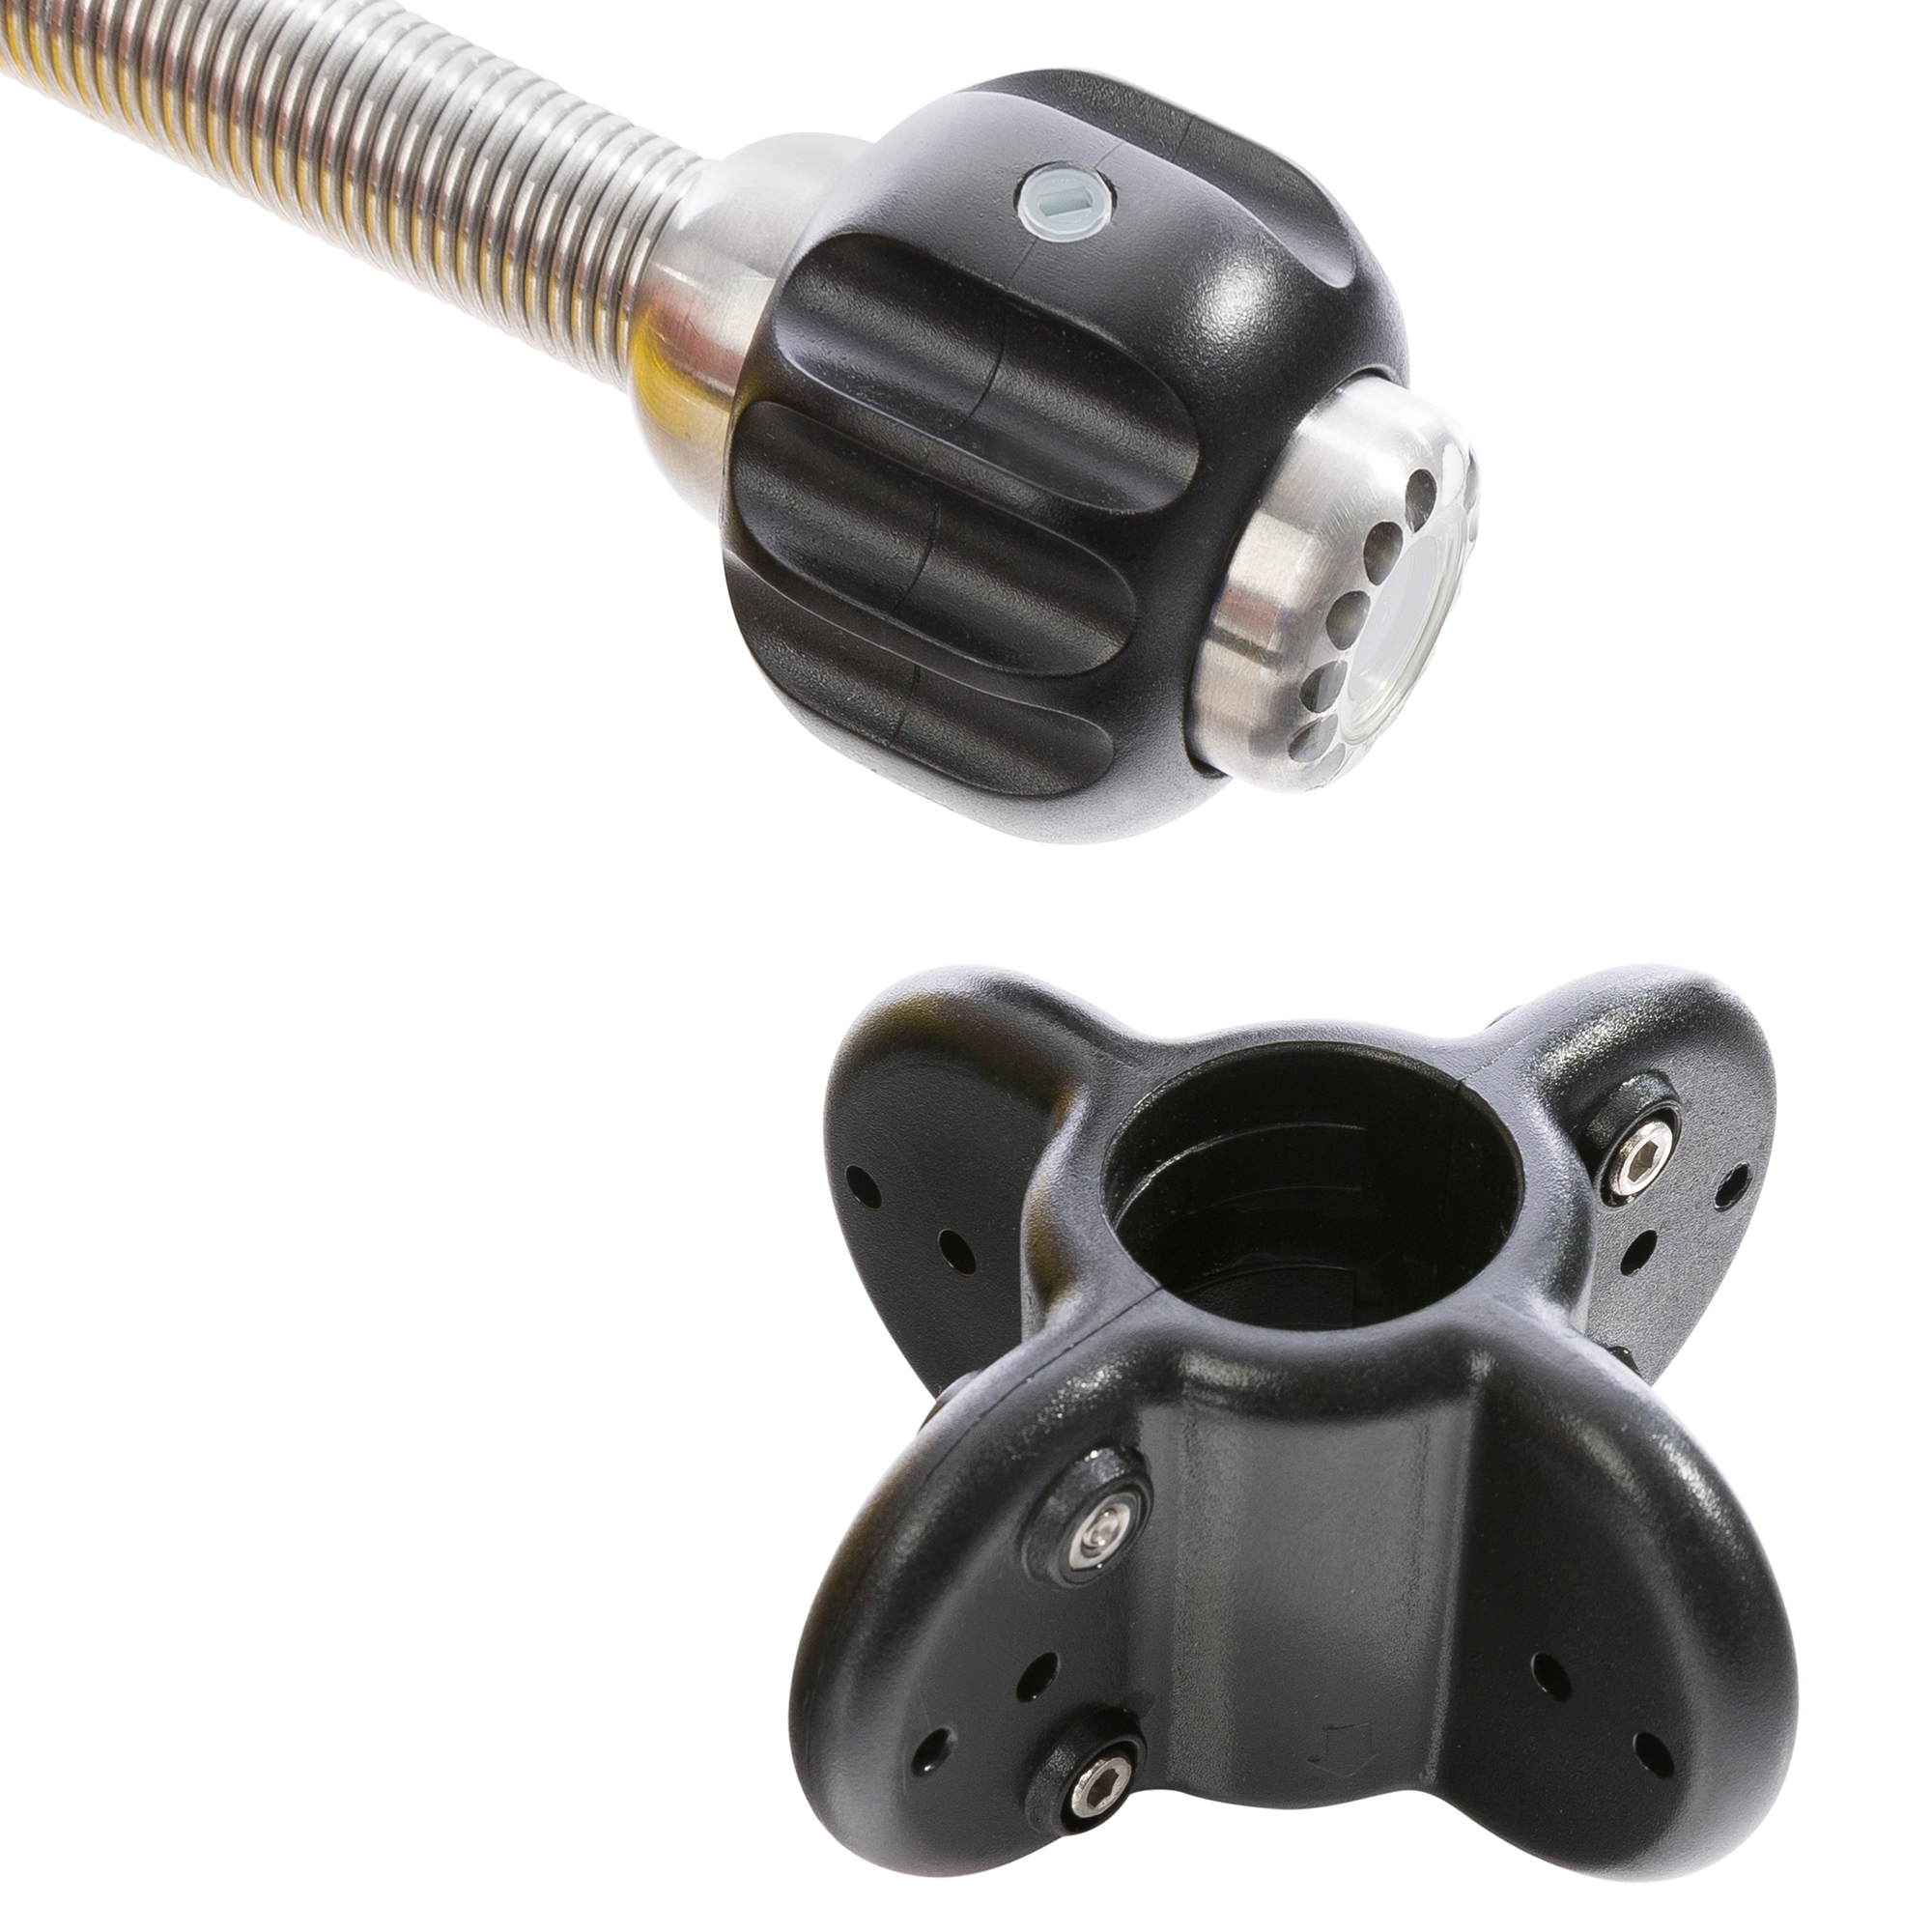 AREBOS Endoskop | Kanalkamera mit | | | m 30 IP68 USB Anschluss Rohrkamera, | Mehrfarbig Wasserdicht